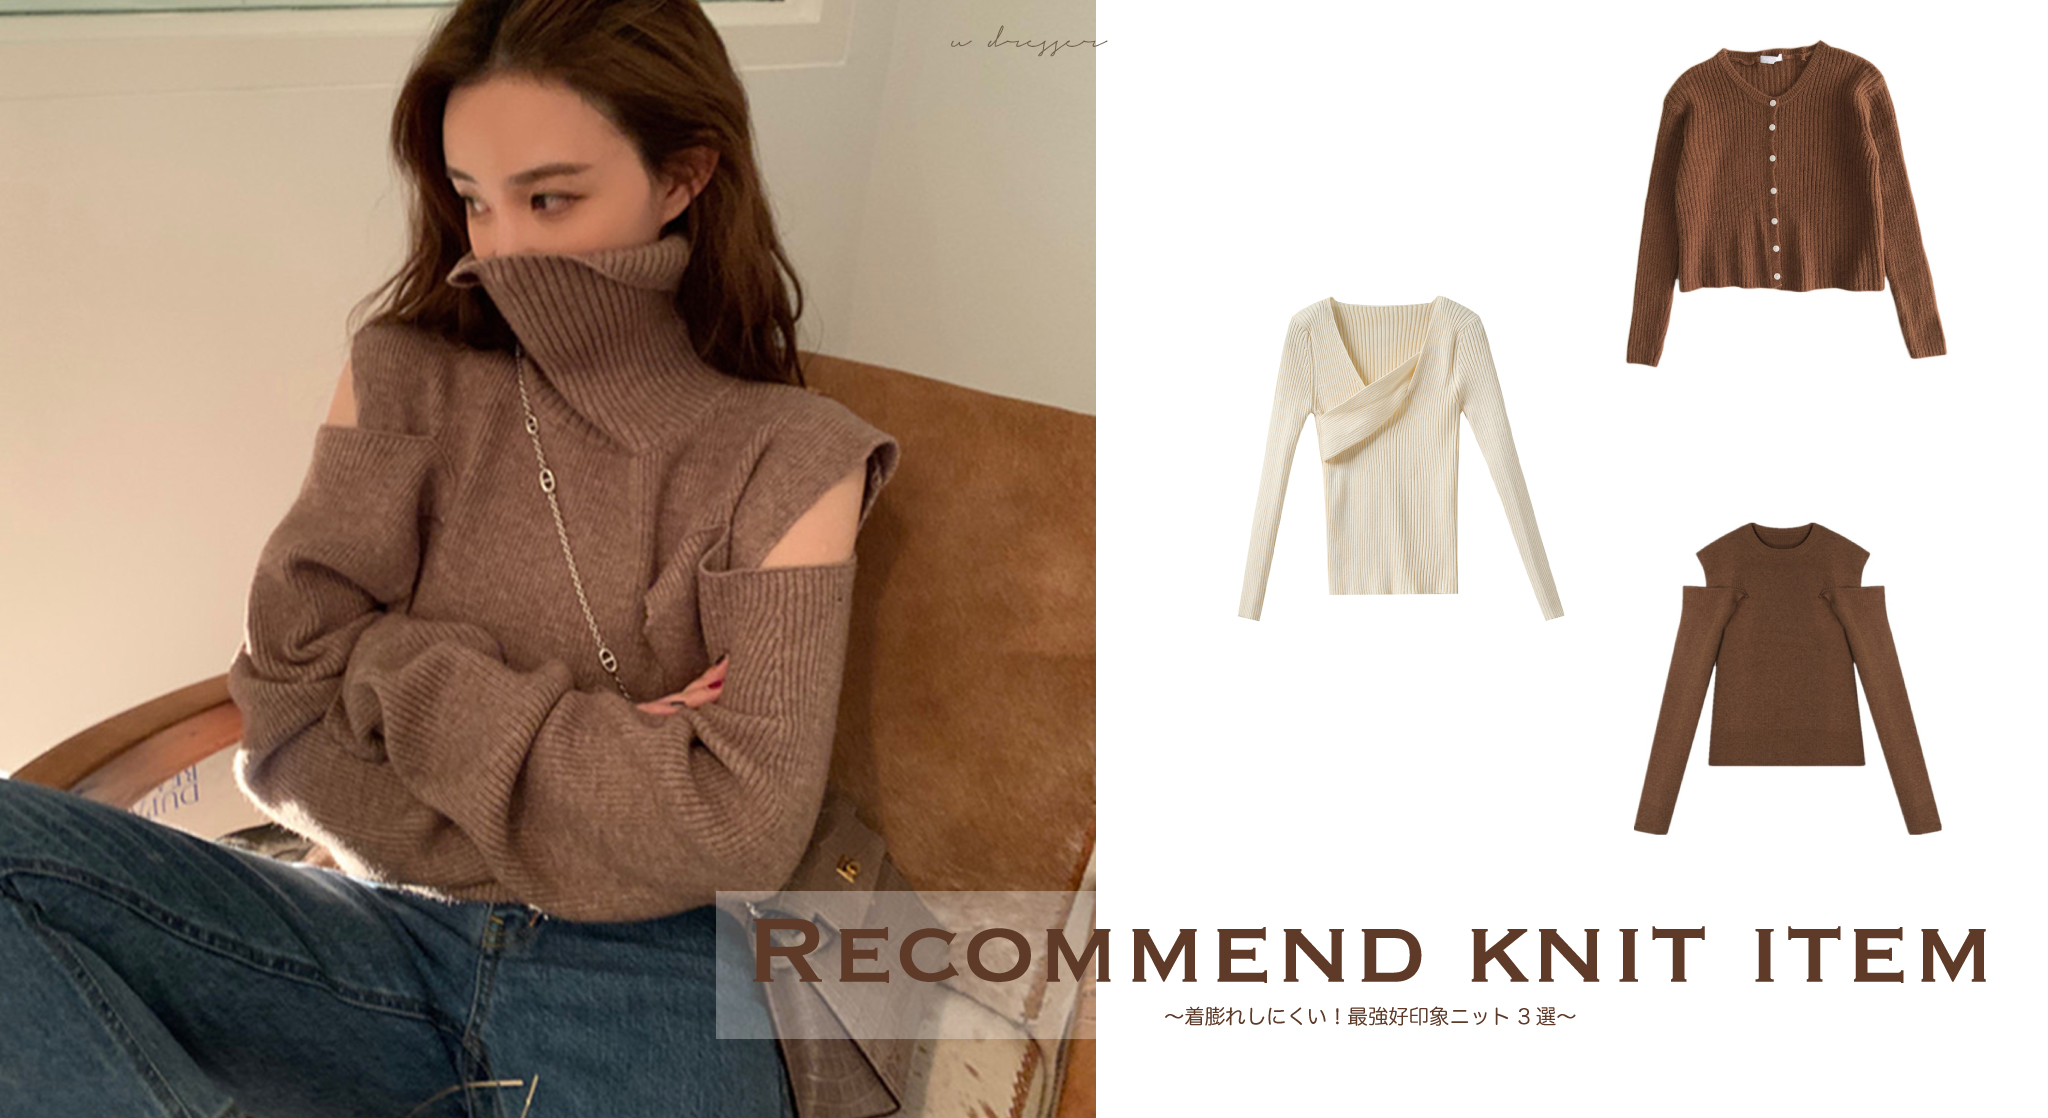 Recommend knit item 〜着膨れしにくい！最強好印象ニット 3選❤︎〜